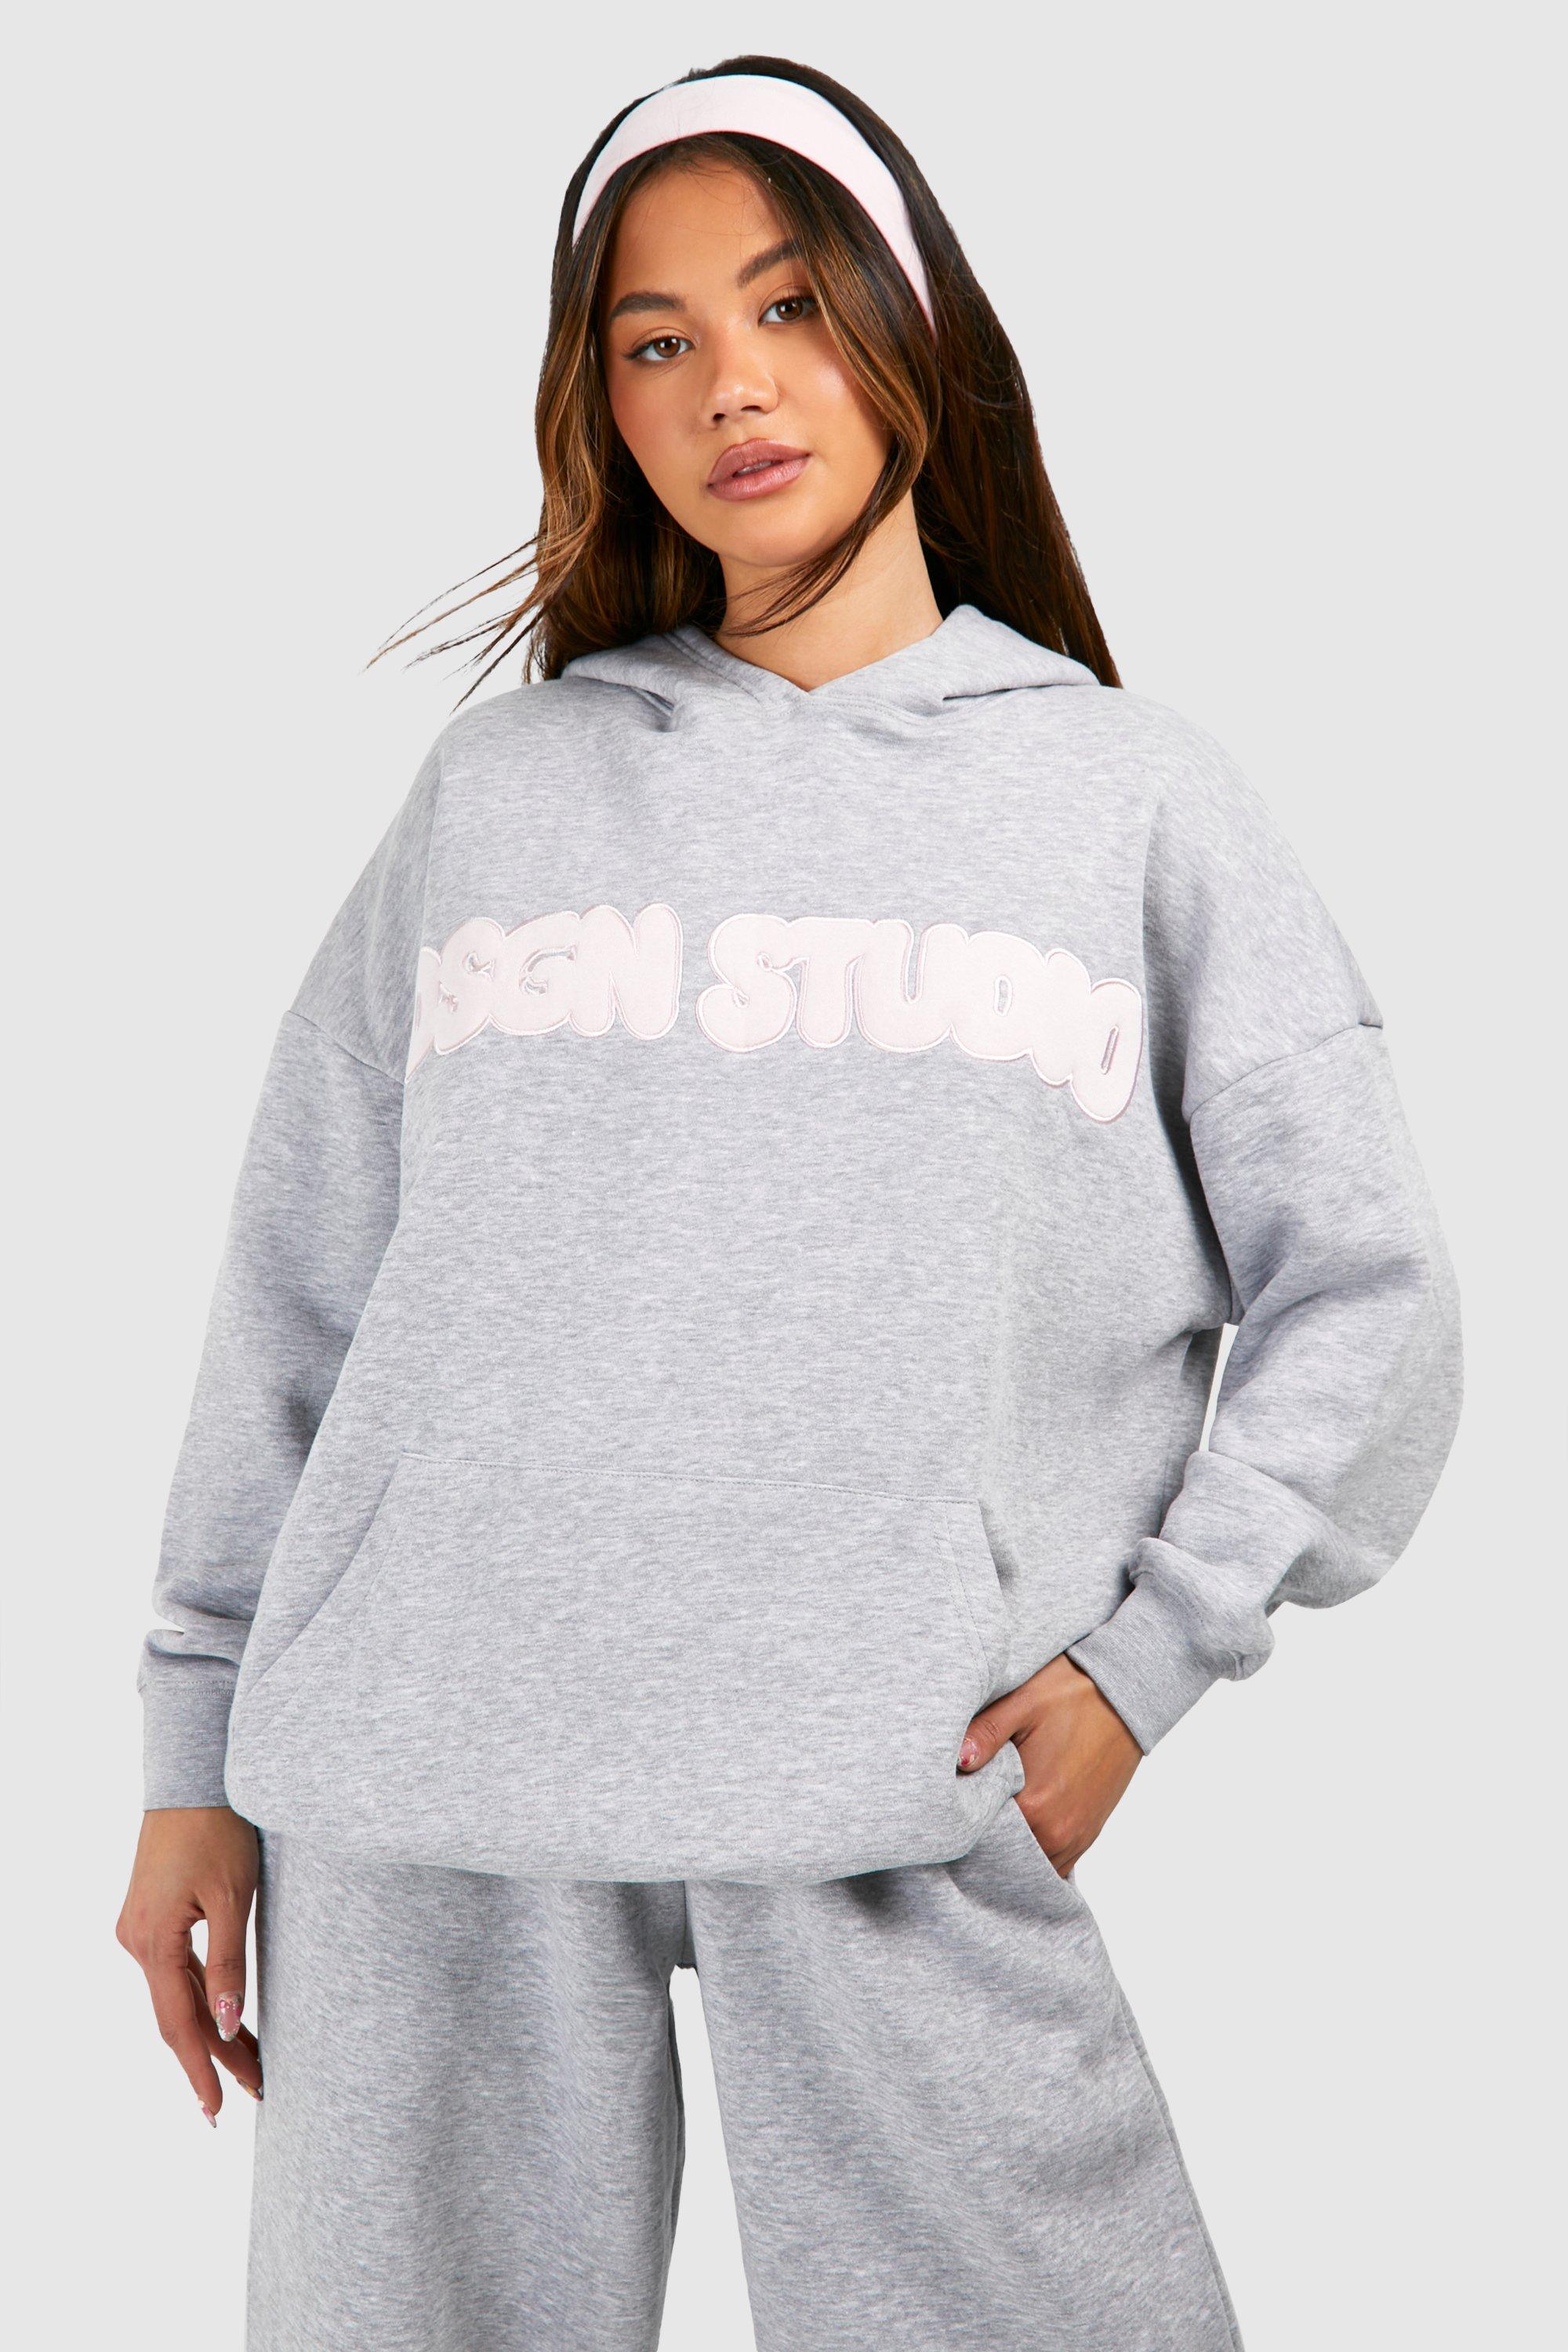 Dsgn Studio Applique Oversized Hood For Women-Bho-2380Grey